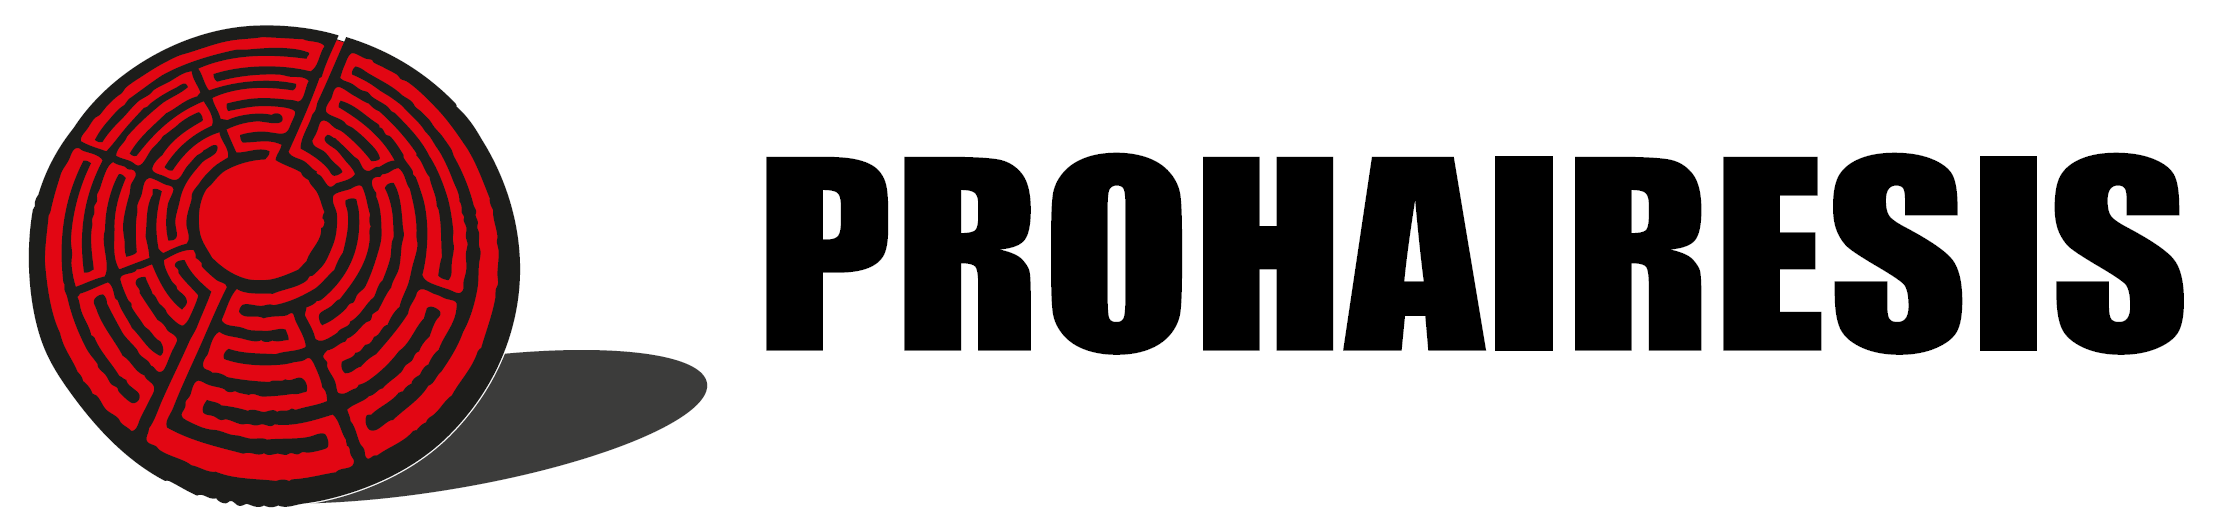 Prohairesis